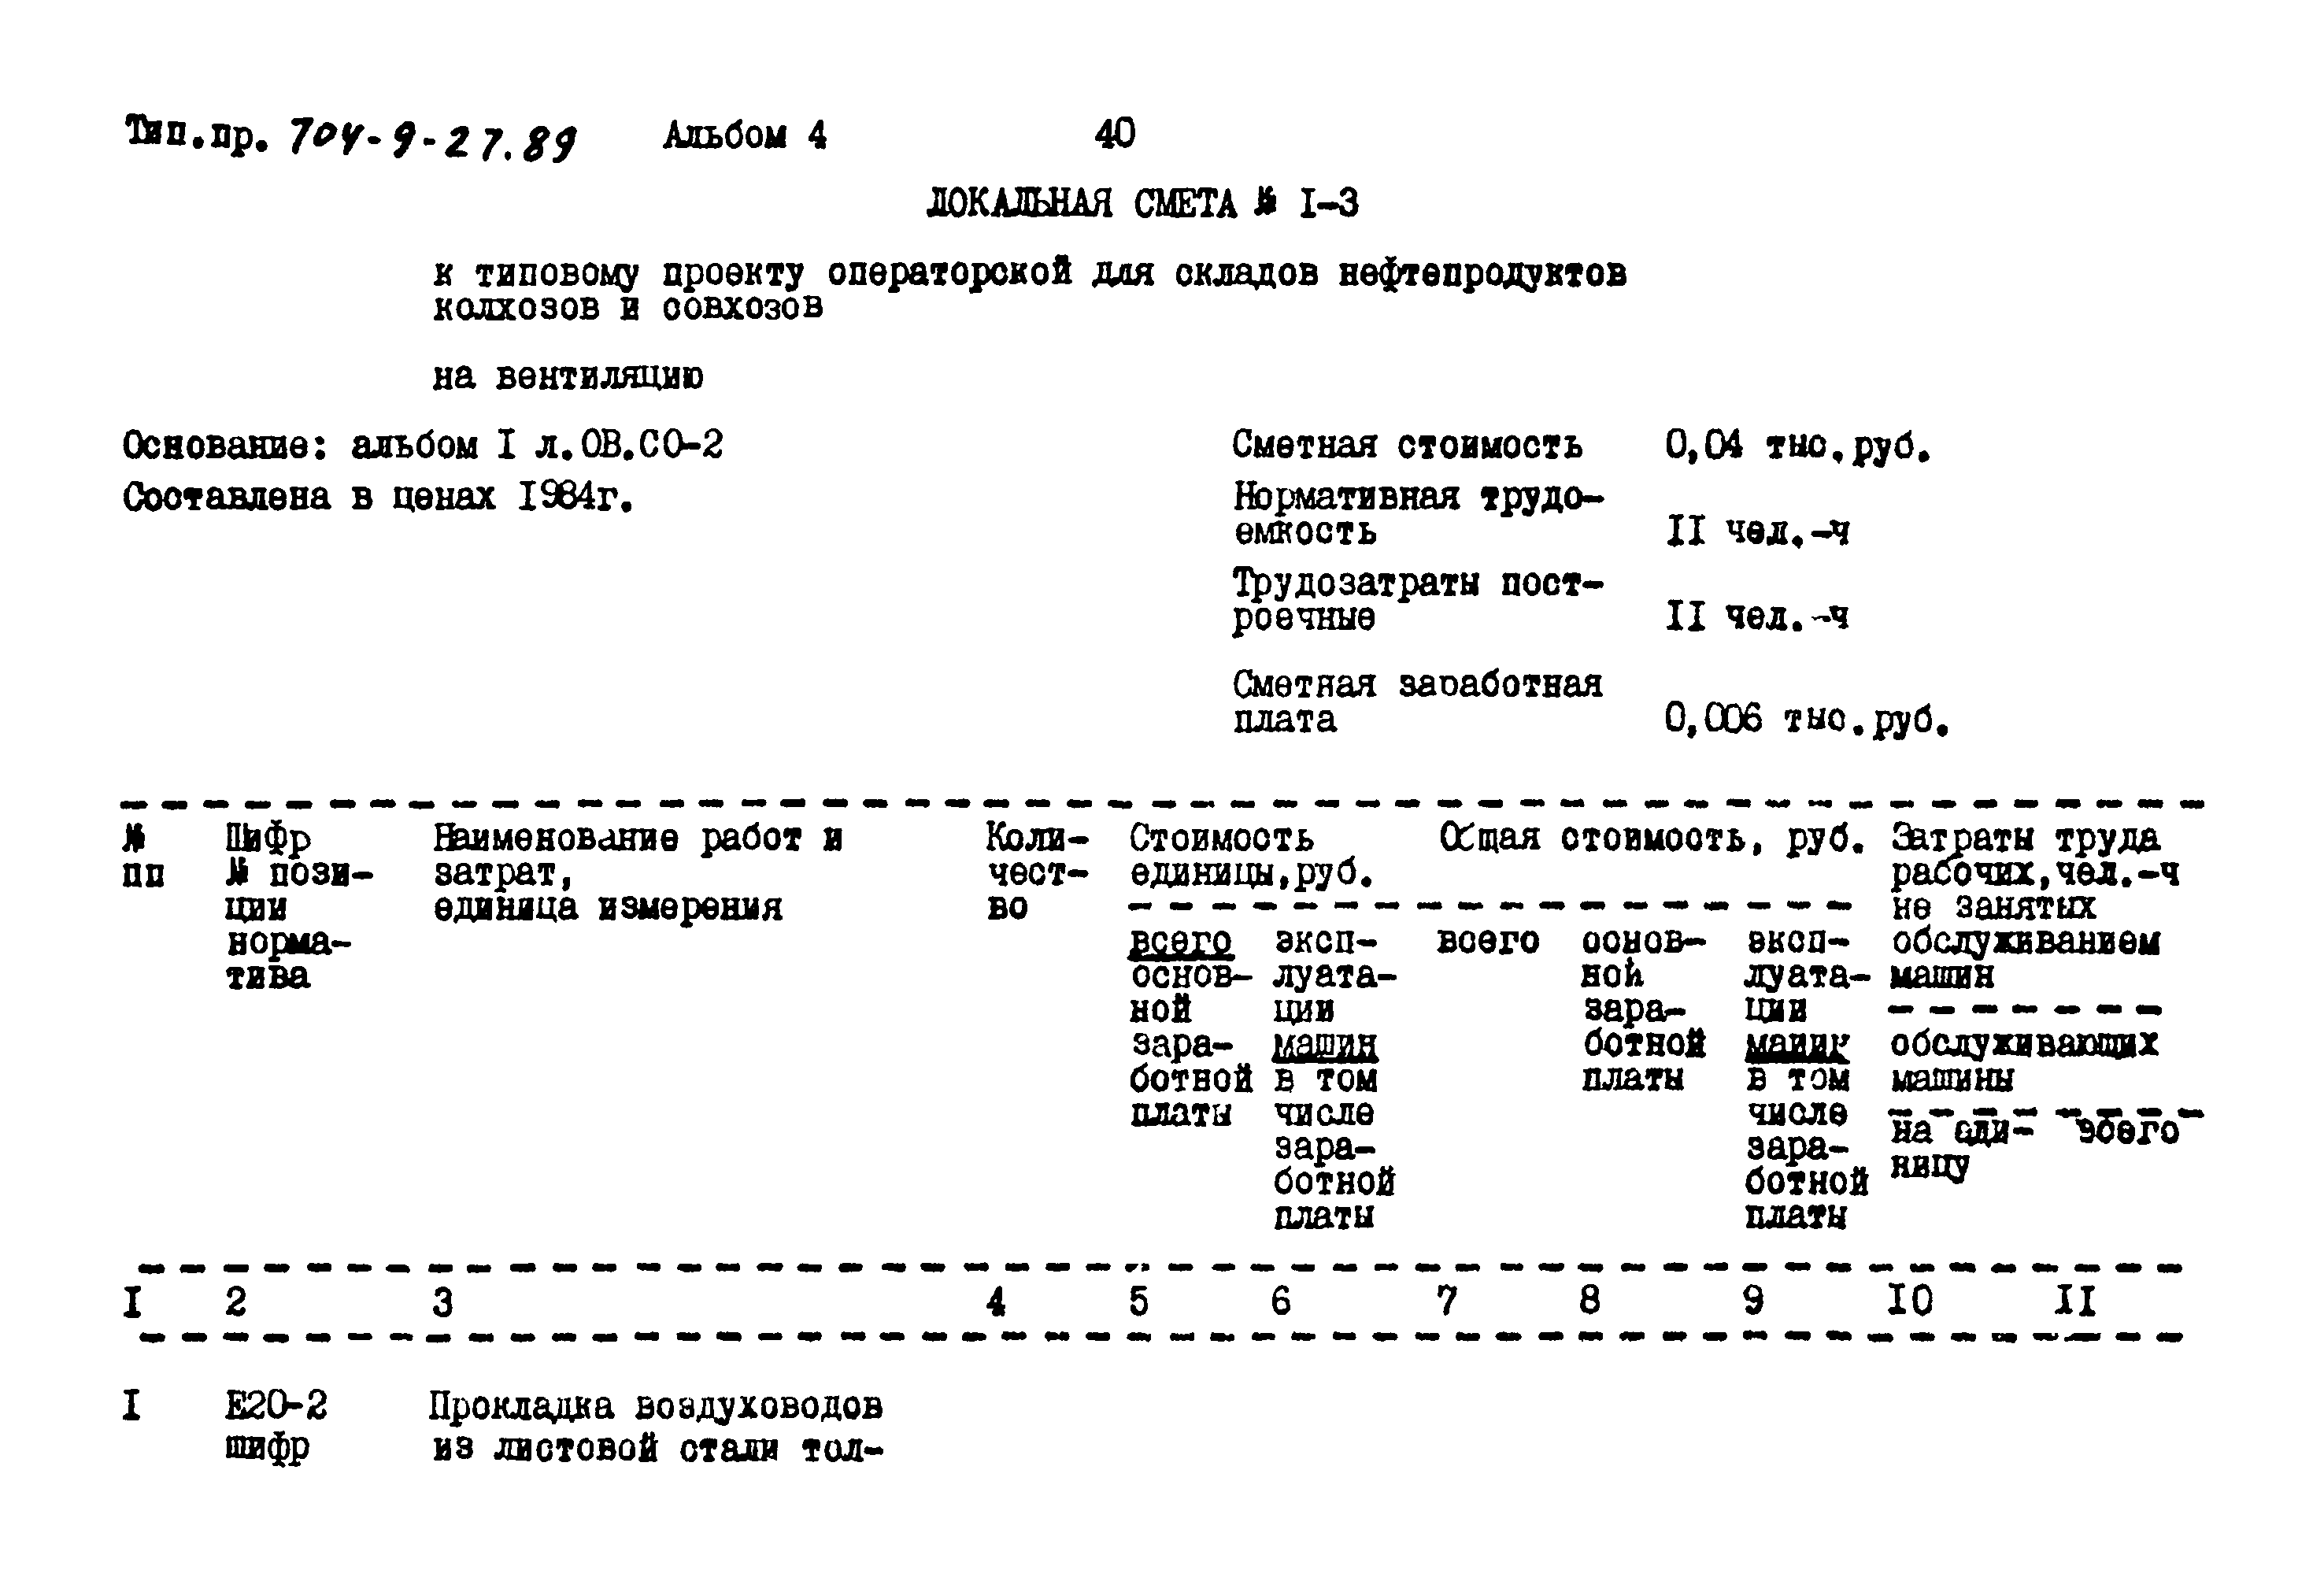 Типовой проект 704-9-27.89